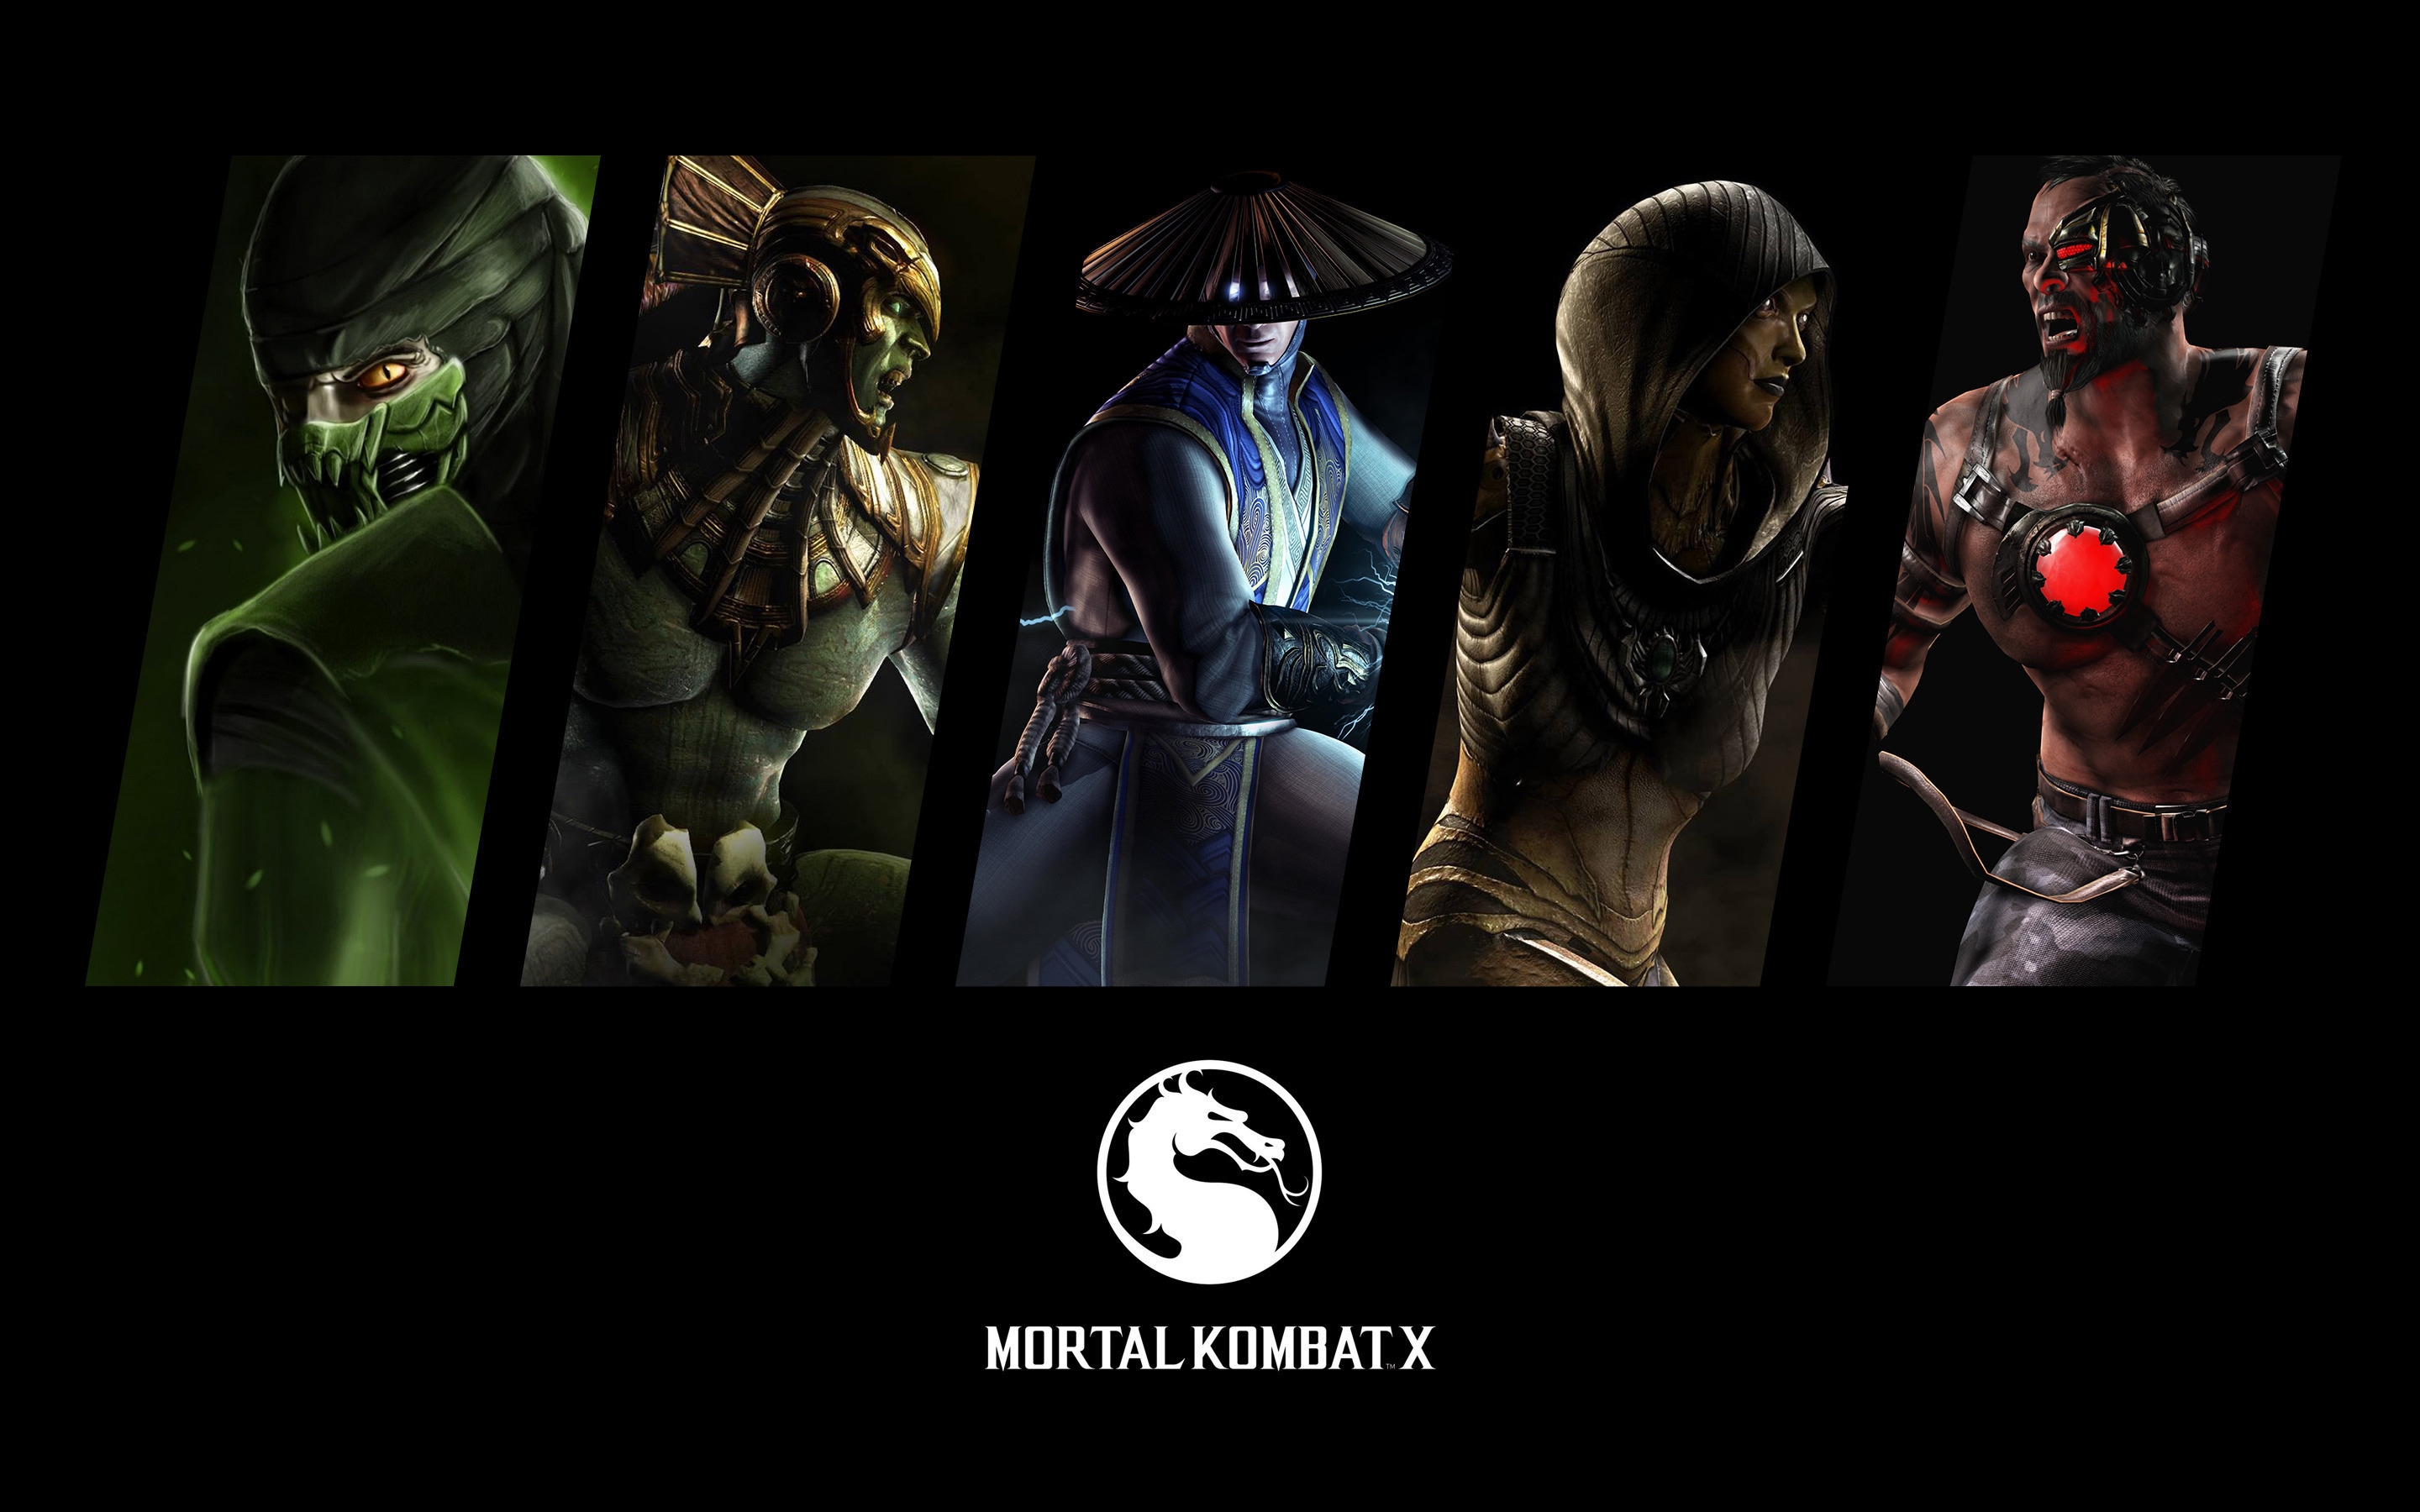 Mortal Kombat X for 2880 x 1800 Retina Display resolution